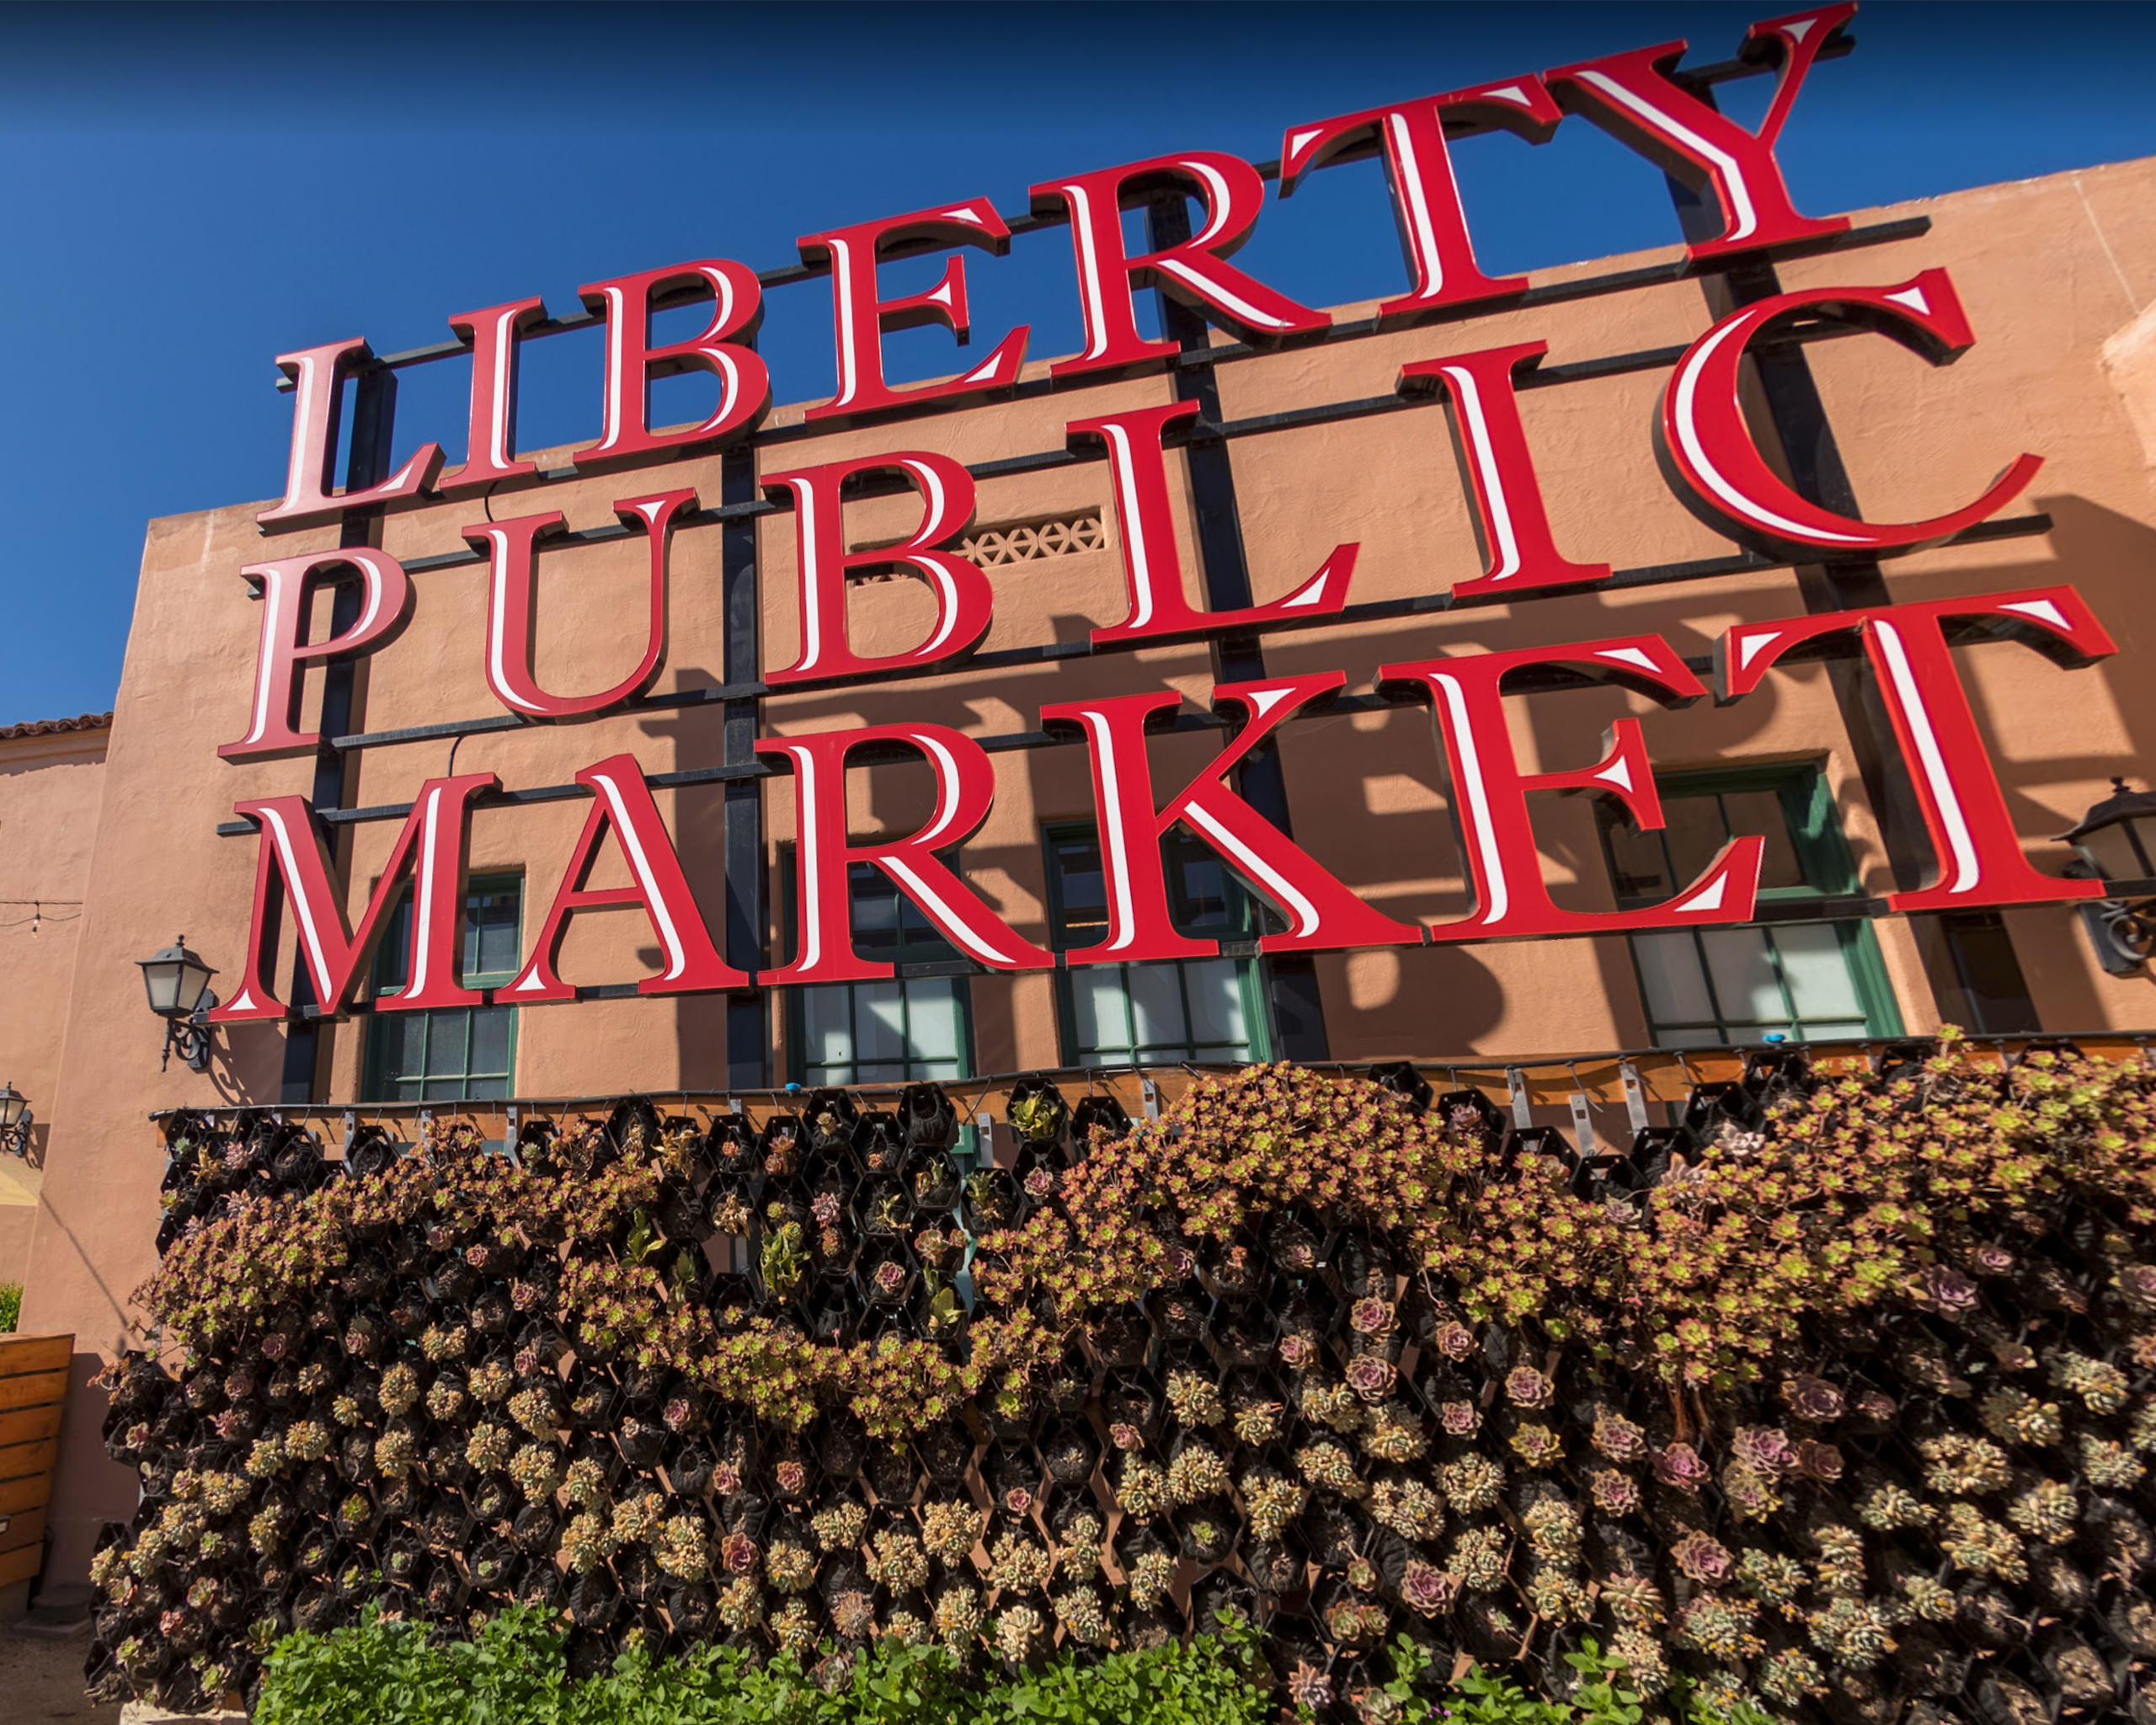 Liberty Public Market